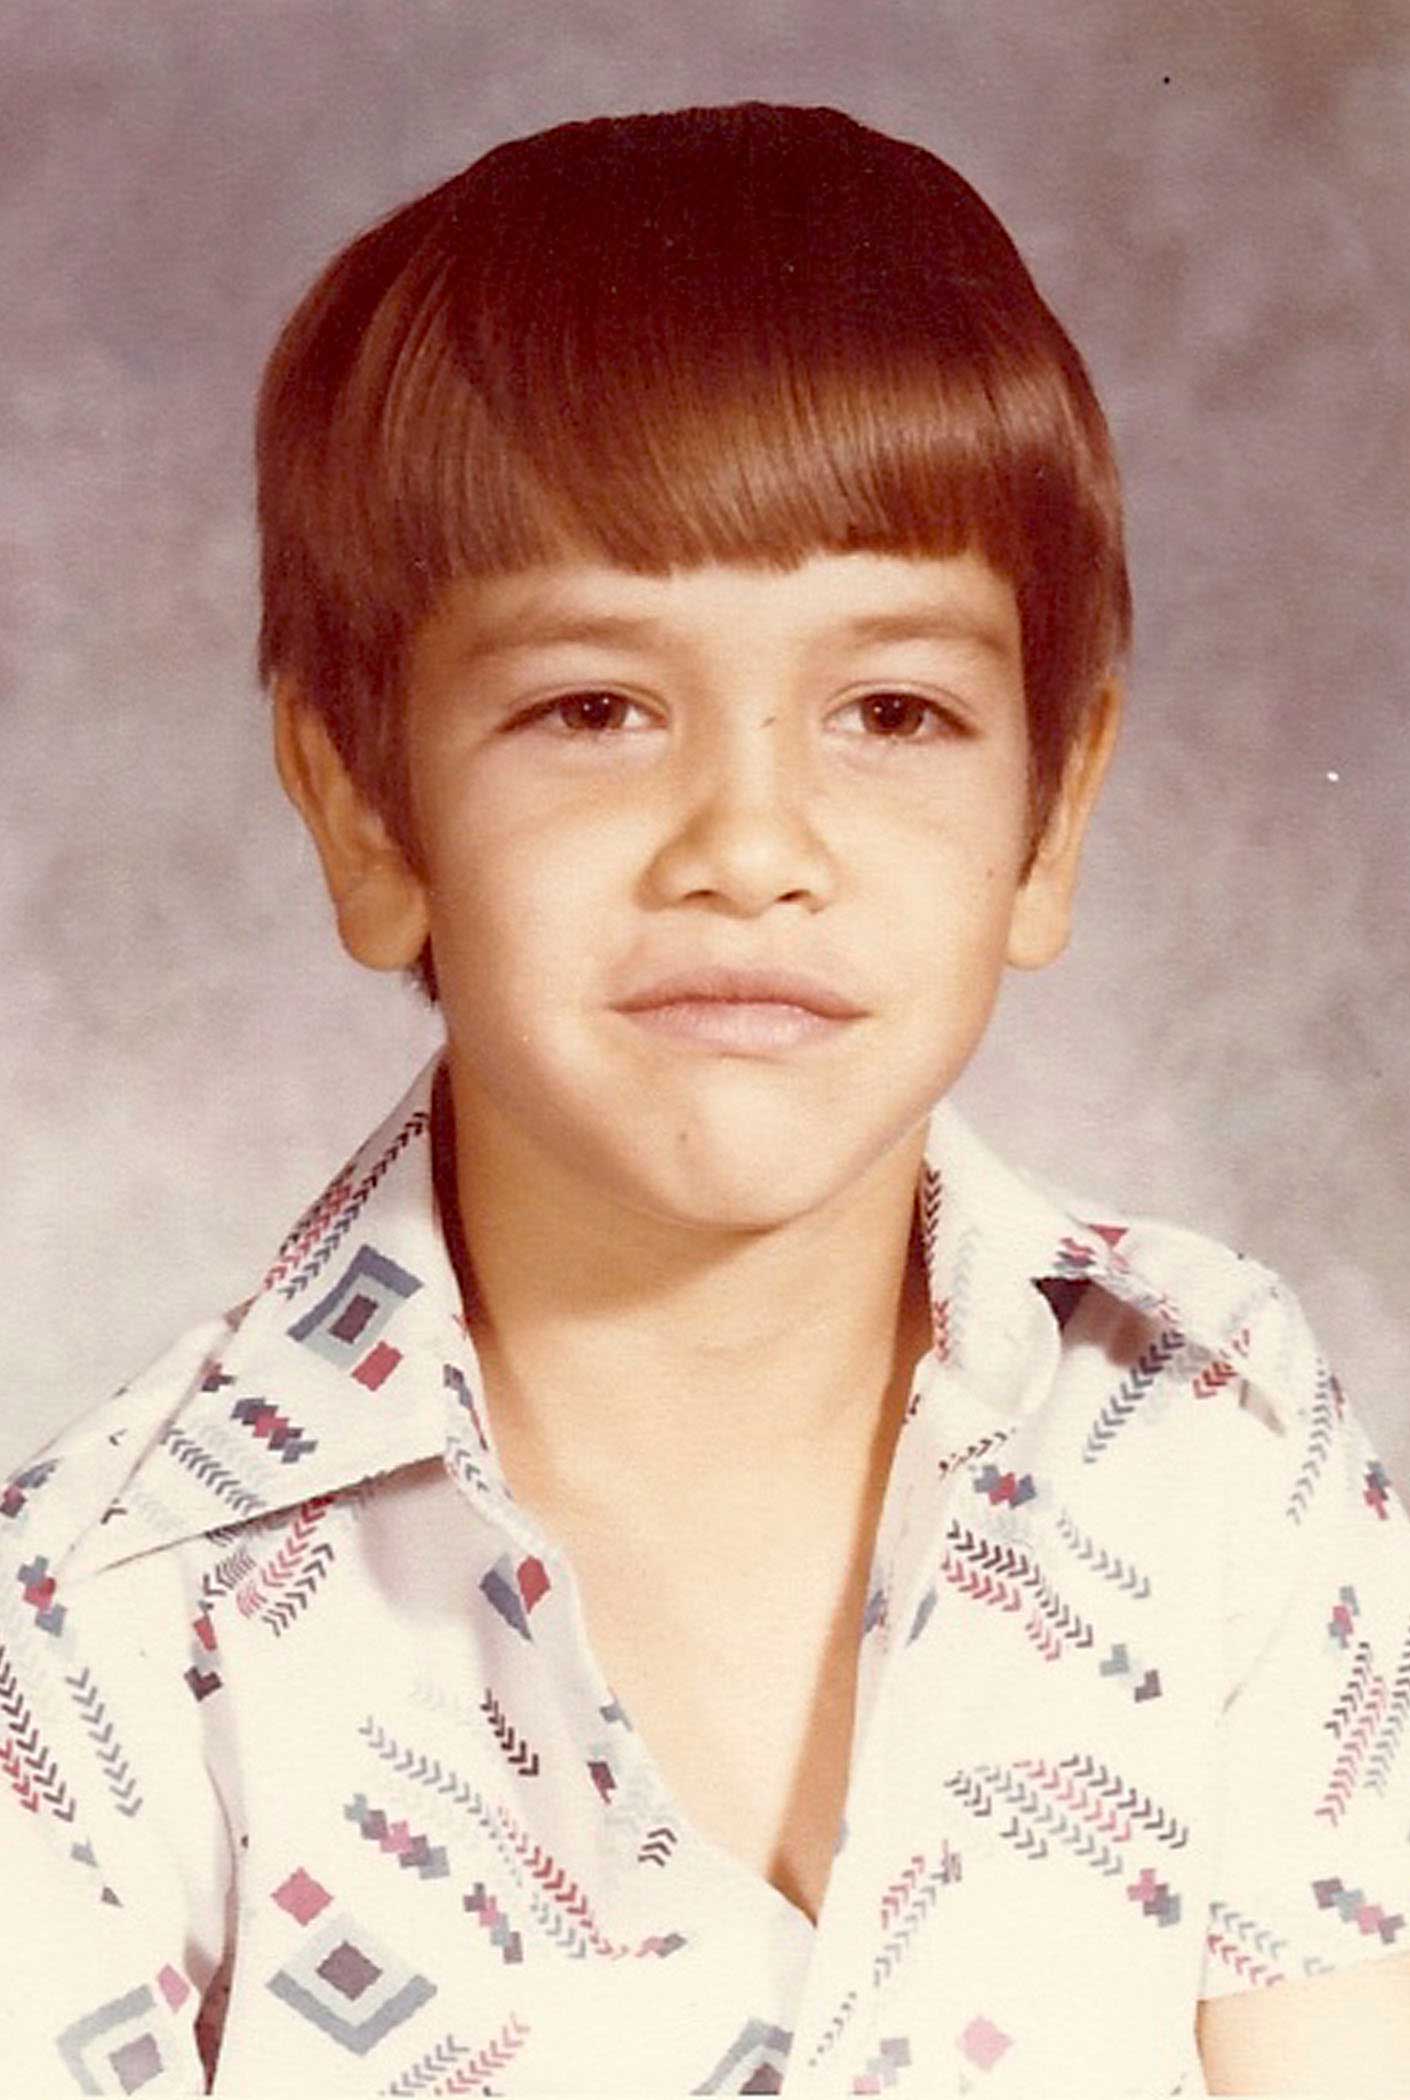 Marco Rubio in 6th grade.